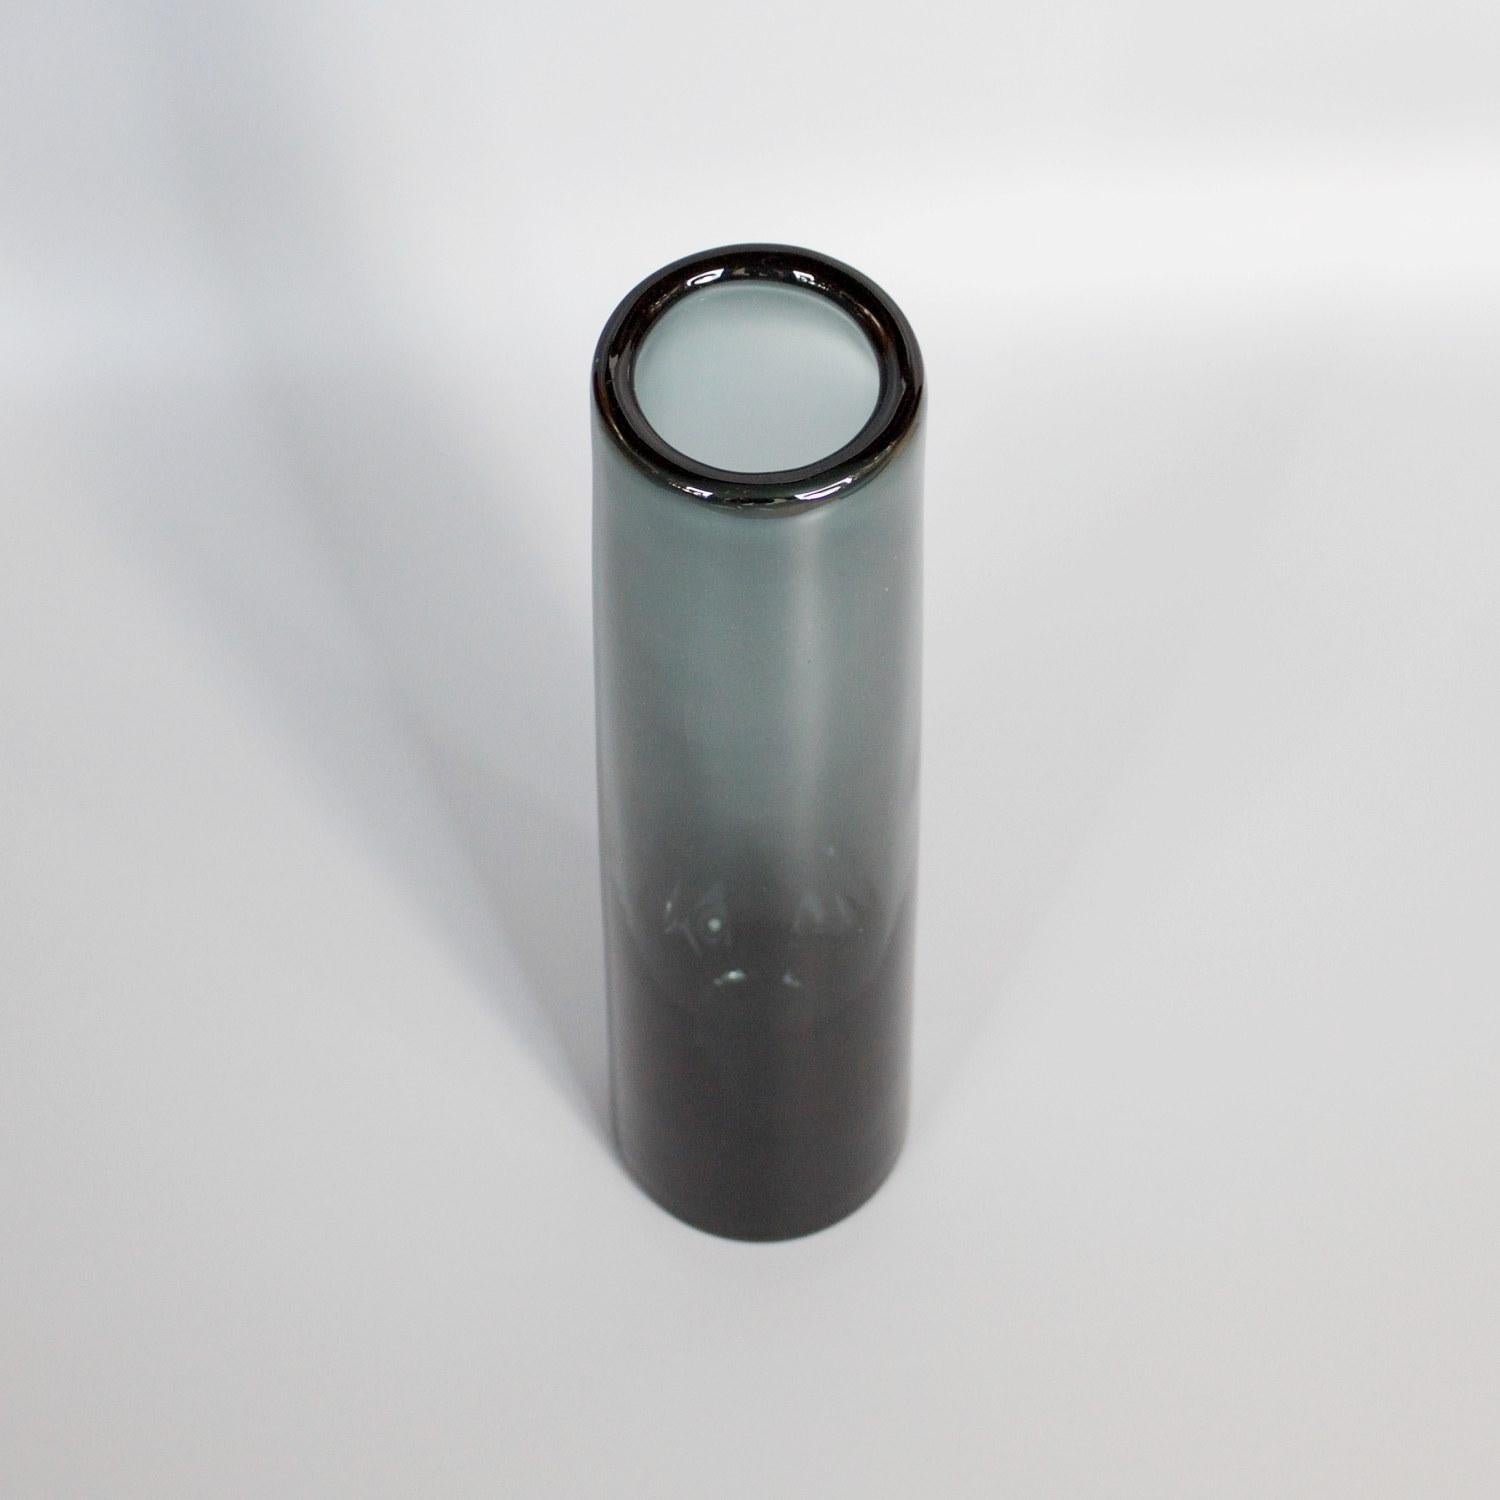 A smoked grey cylinder vase by Danish glassmaker Per Lütken for Holmegaard Glassworks. Signed and Dated 1962

Dimensions: H 30cm D 6cm

Designer: Per Lütken (1916-1998)

Origin: Denmark

Date: 1962. 

Holmegaard Glassworks is located in